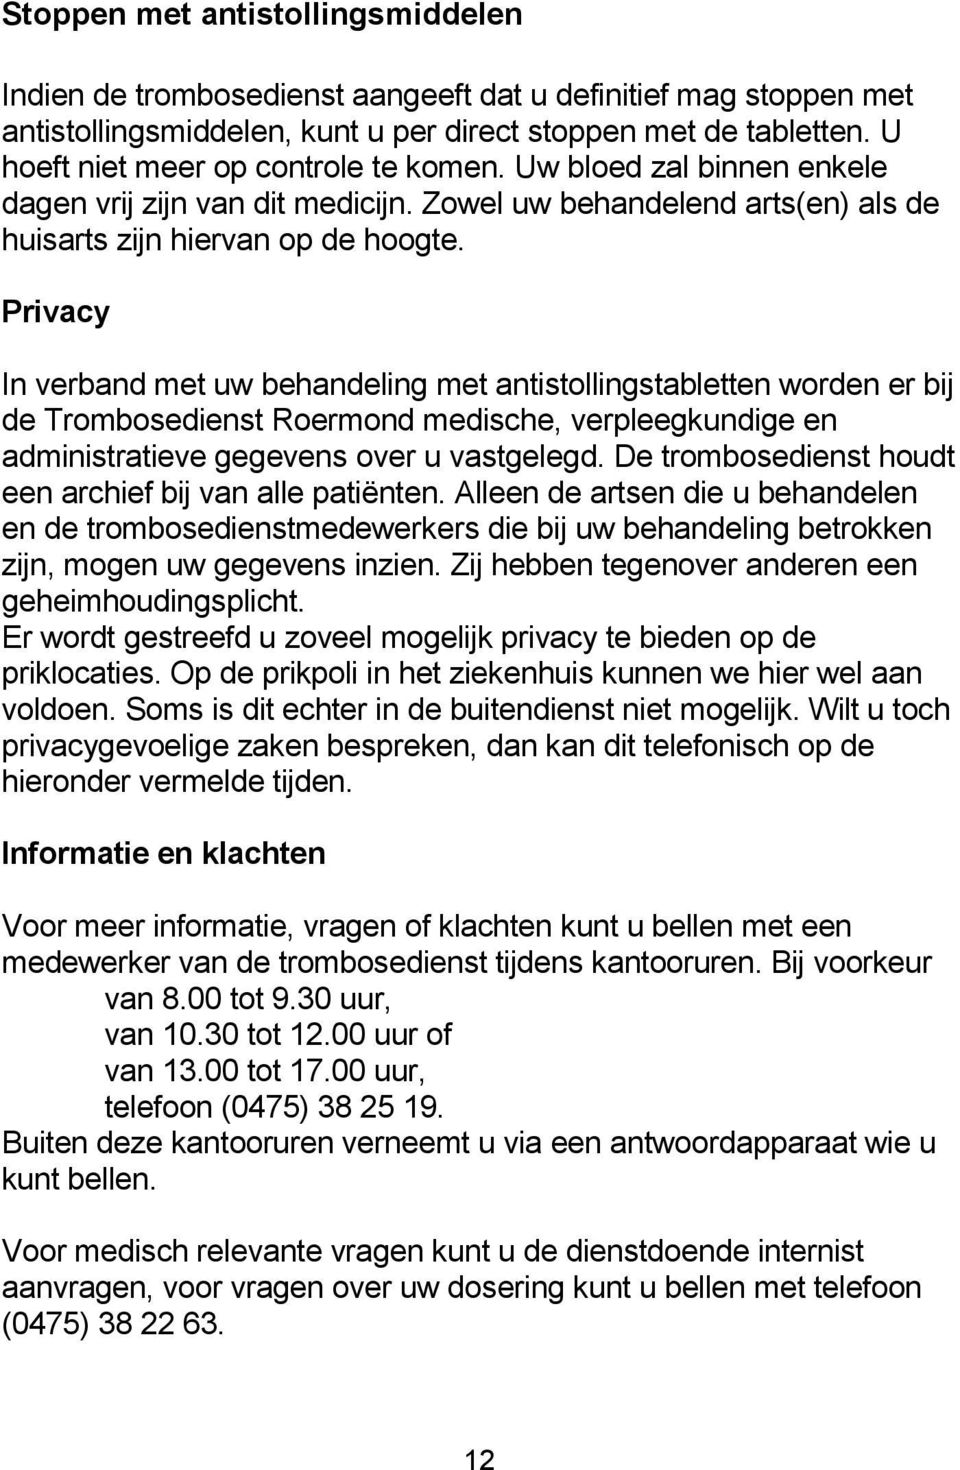 Privacy In verband met uw behandeling met antistollingstabletten worden er bij de Trombosedienst Roermond medische, verpleegkundige en administratieve gegevens over u vastgelegd.